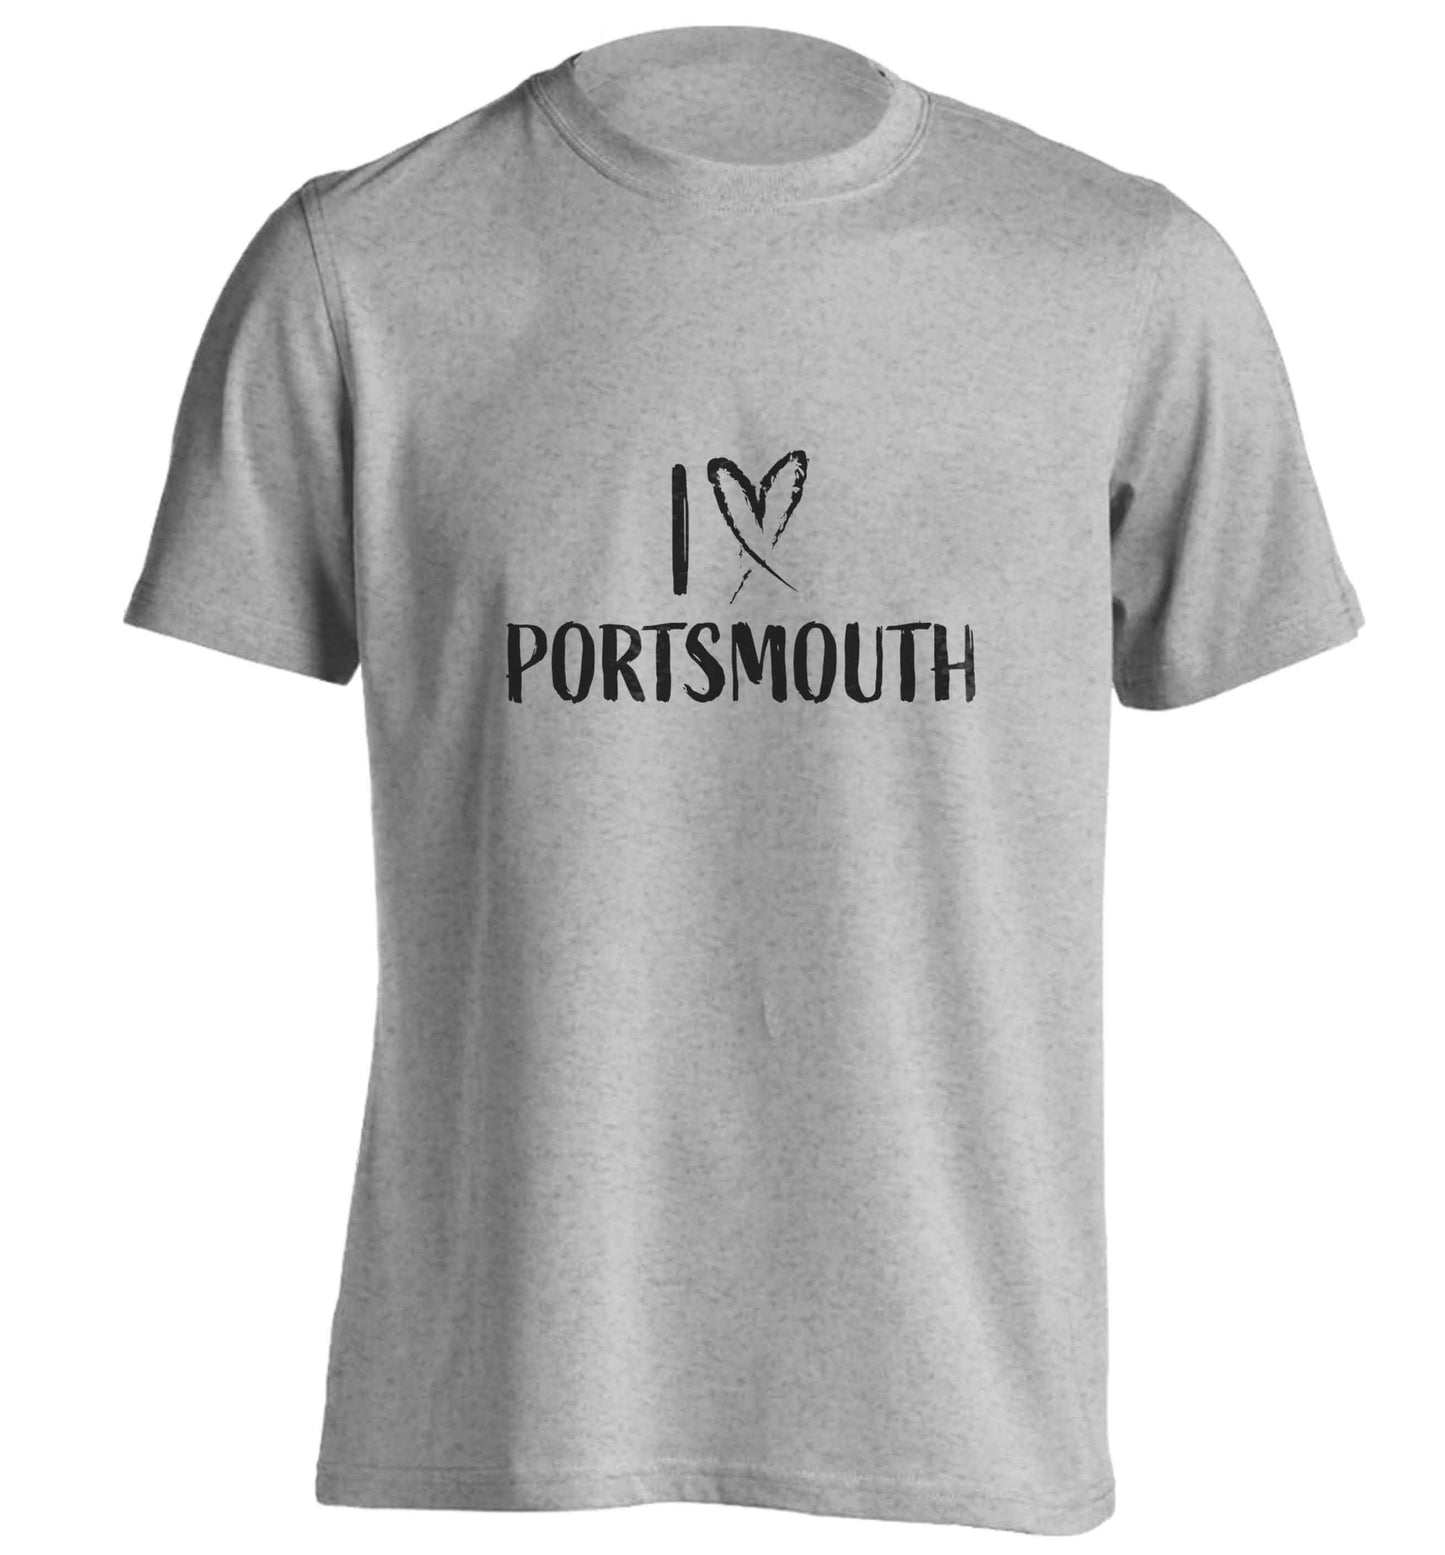 I love Portsmouth adults unisex grey Tshirt 2XL